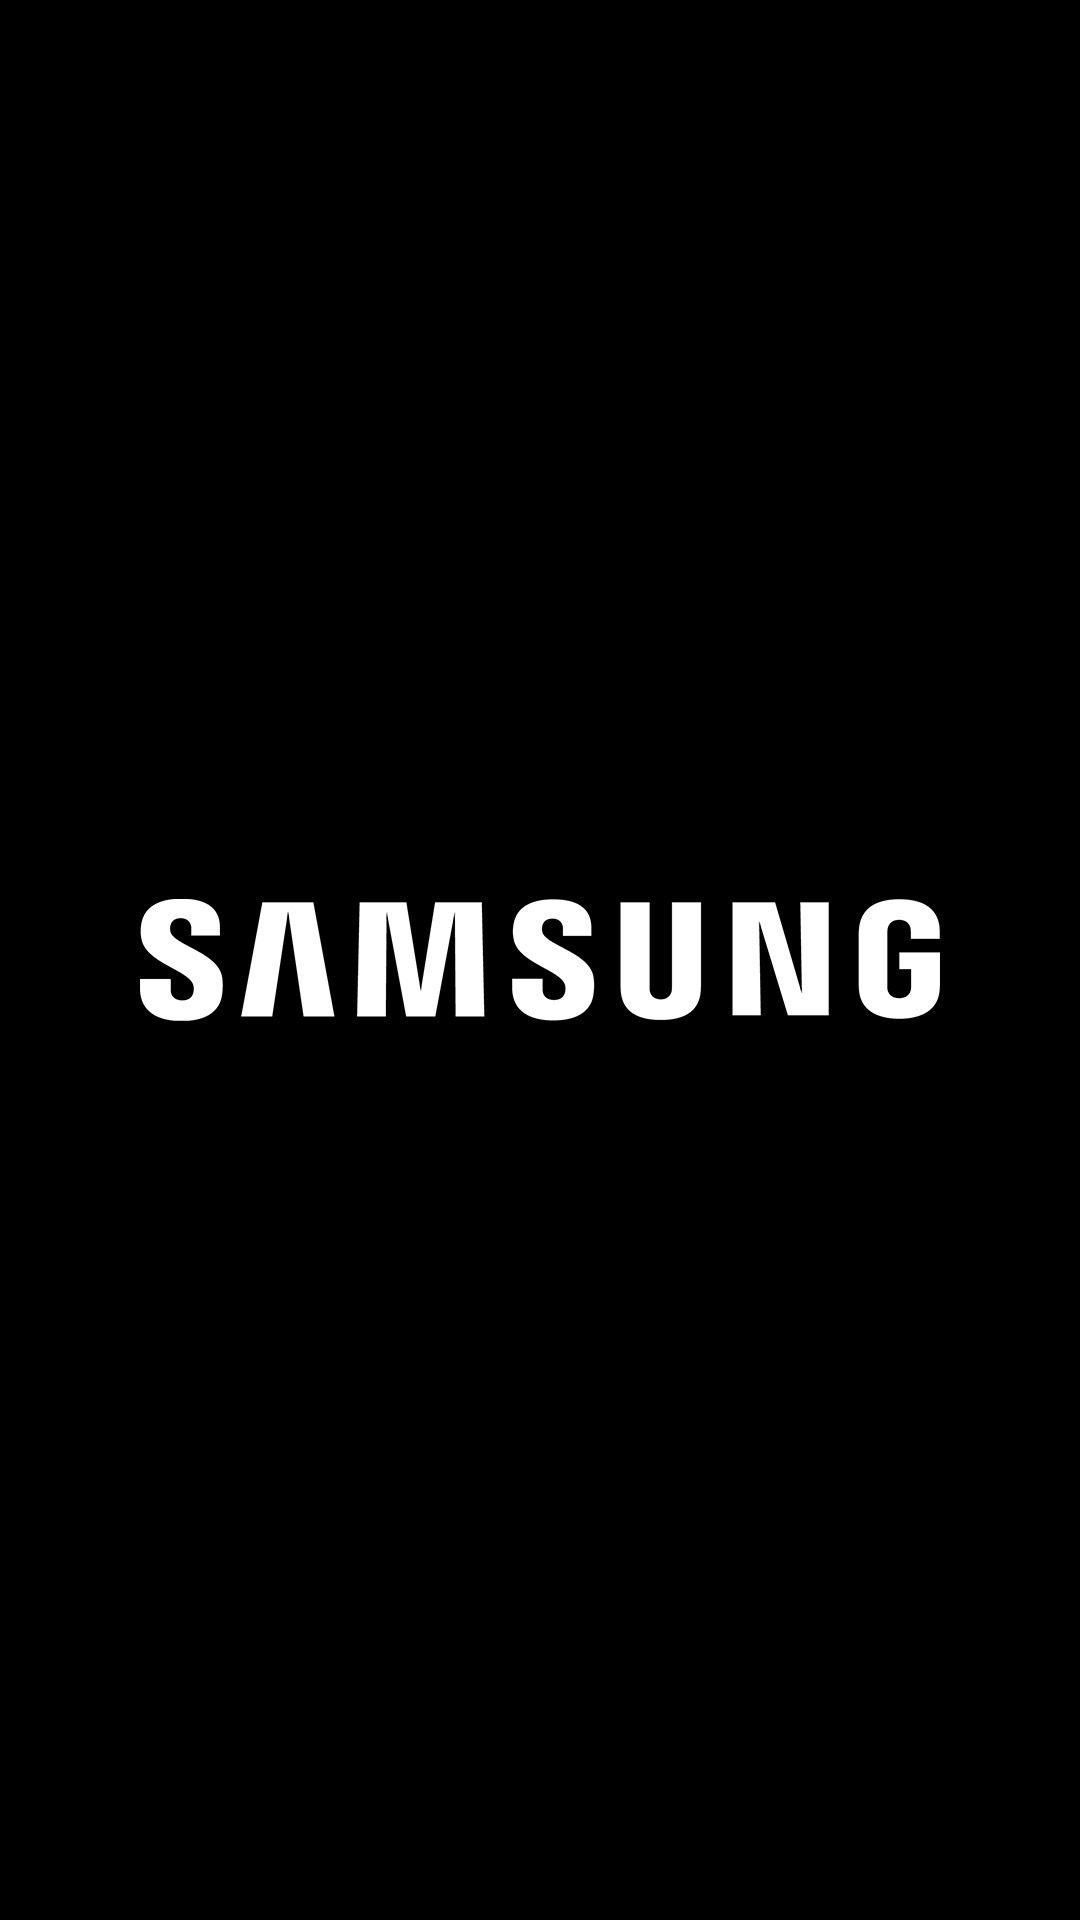 Samsung logo wallpaper. Samsung logo, Samsung wallpaper HD